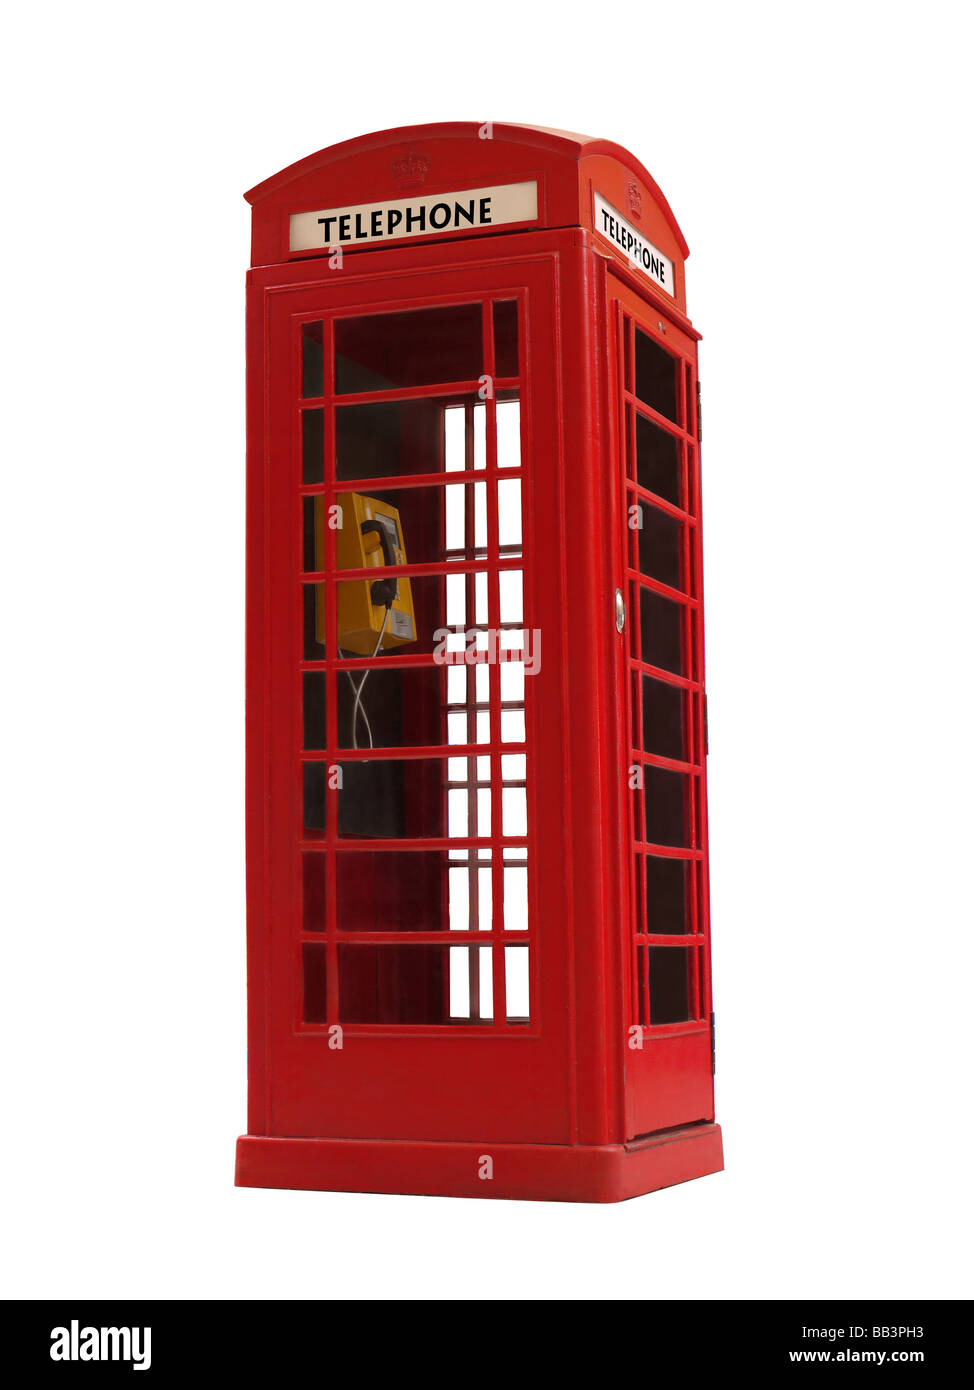 Rouge style Londres cabine téléphonique publique isolated on white Banque D'Images